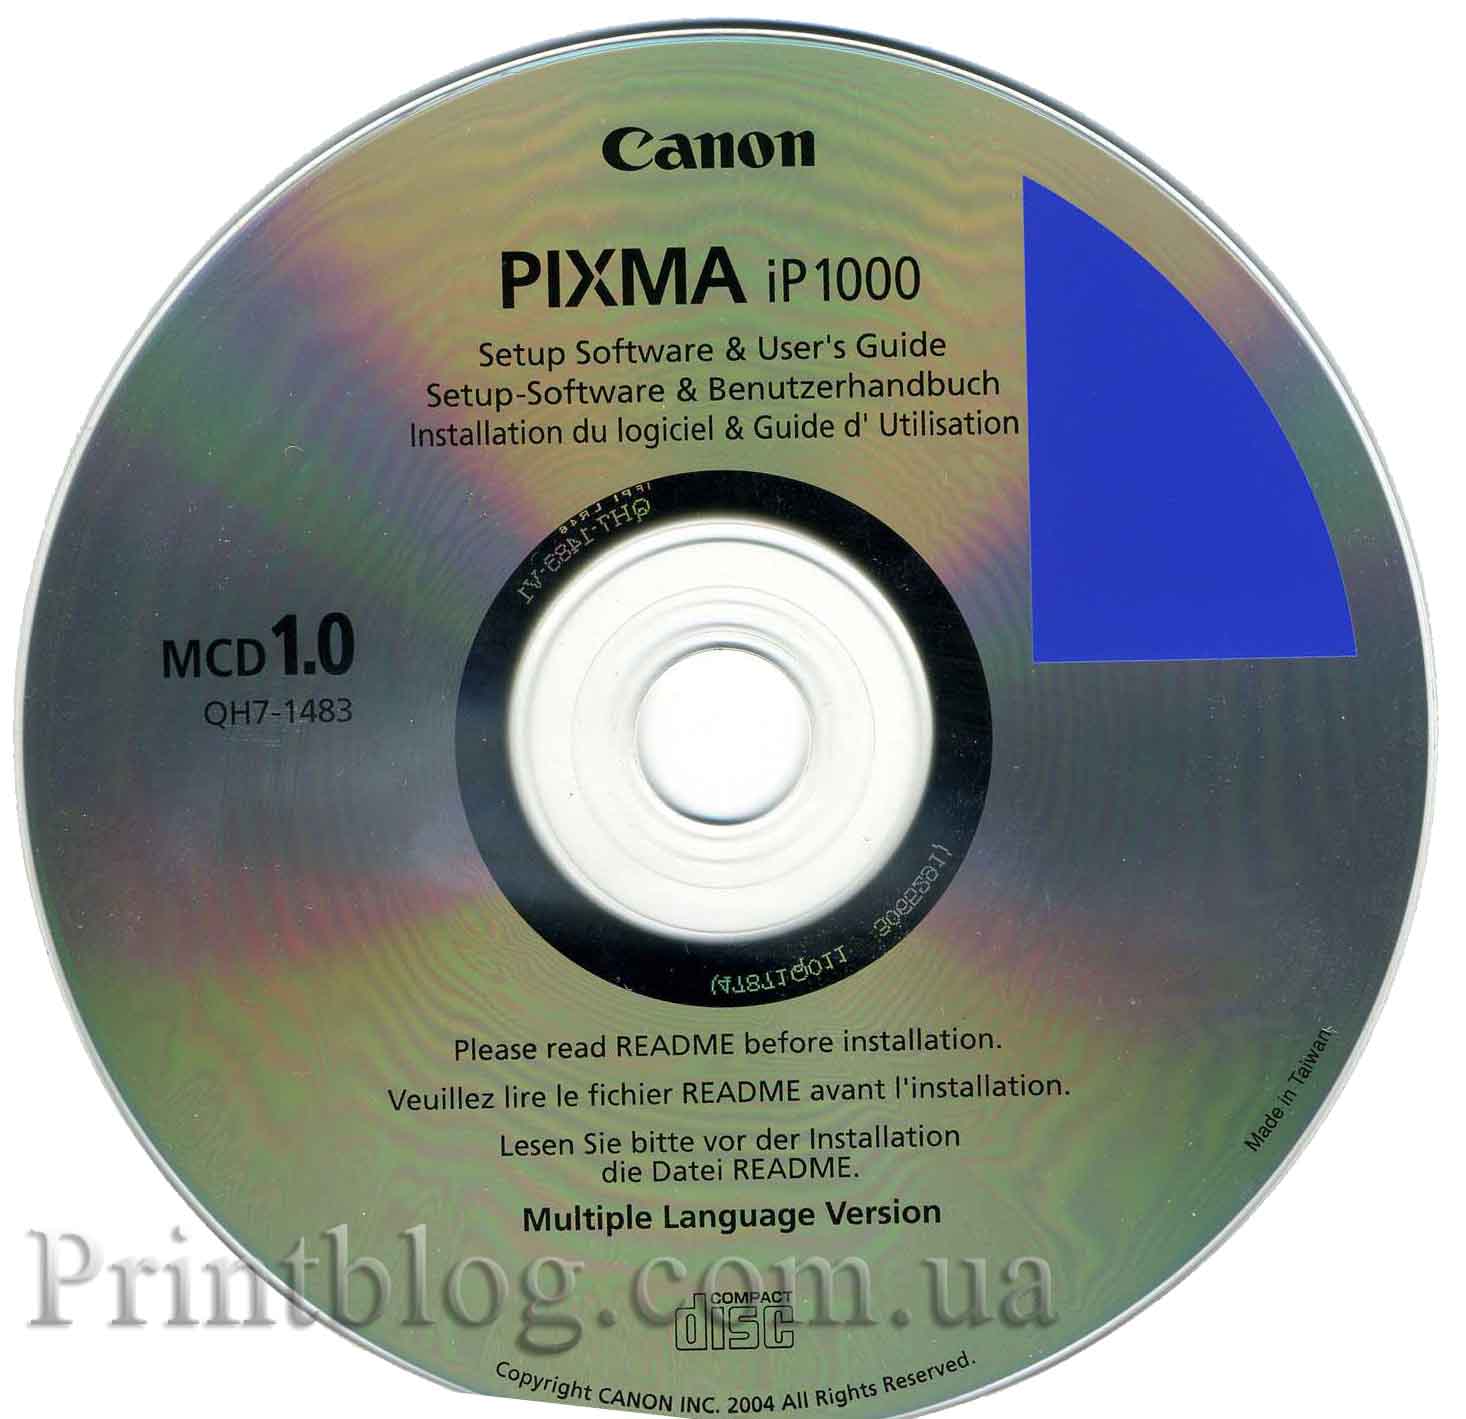 Canon I350 Printer Driver For Windows 7